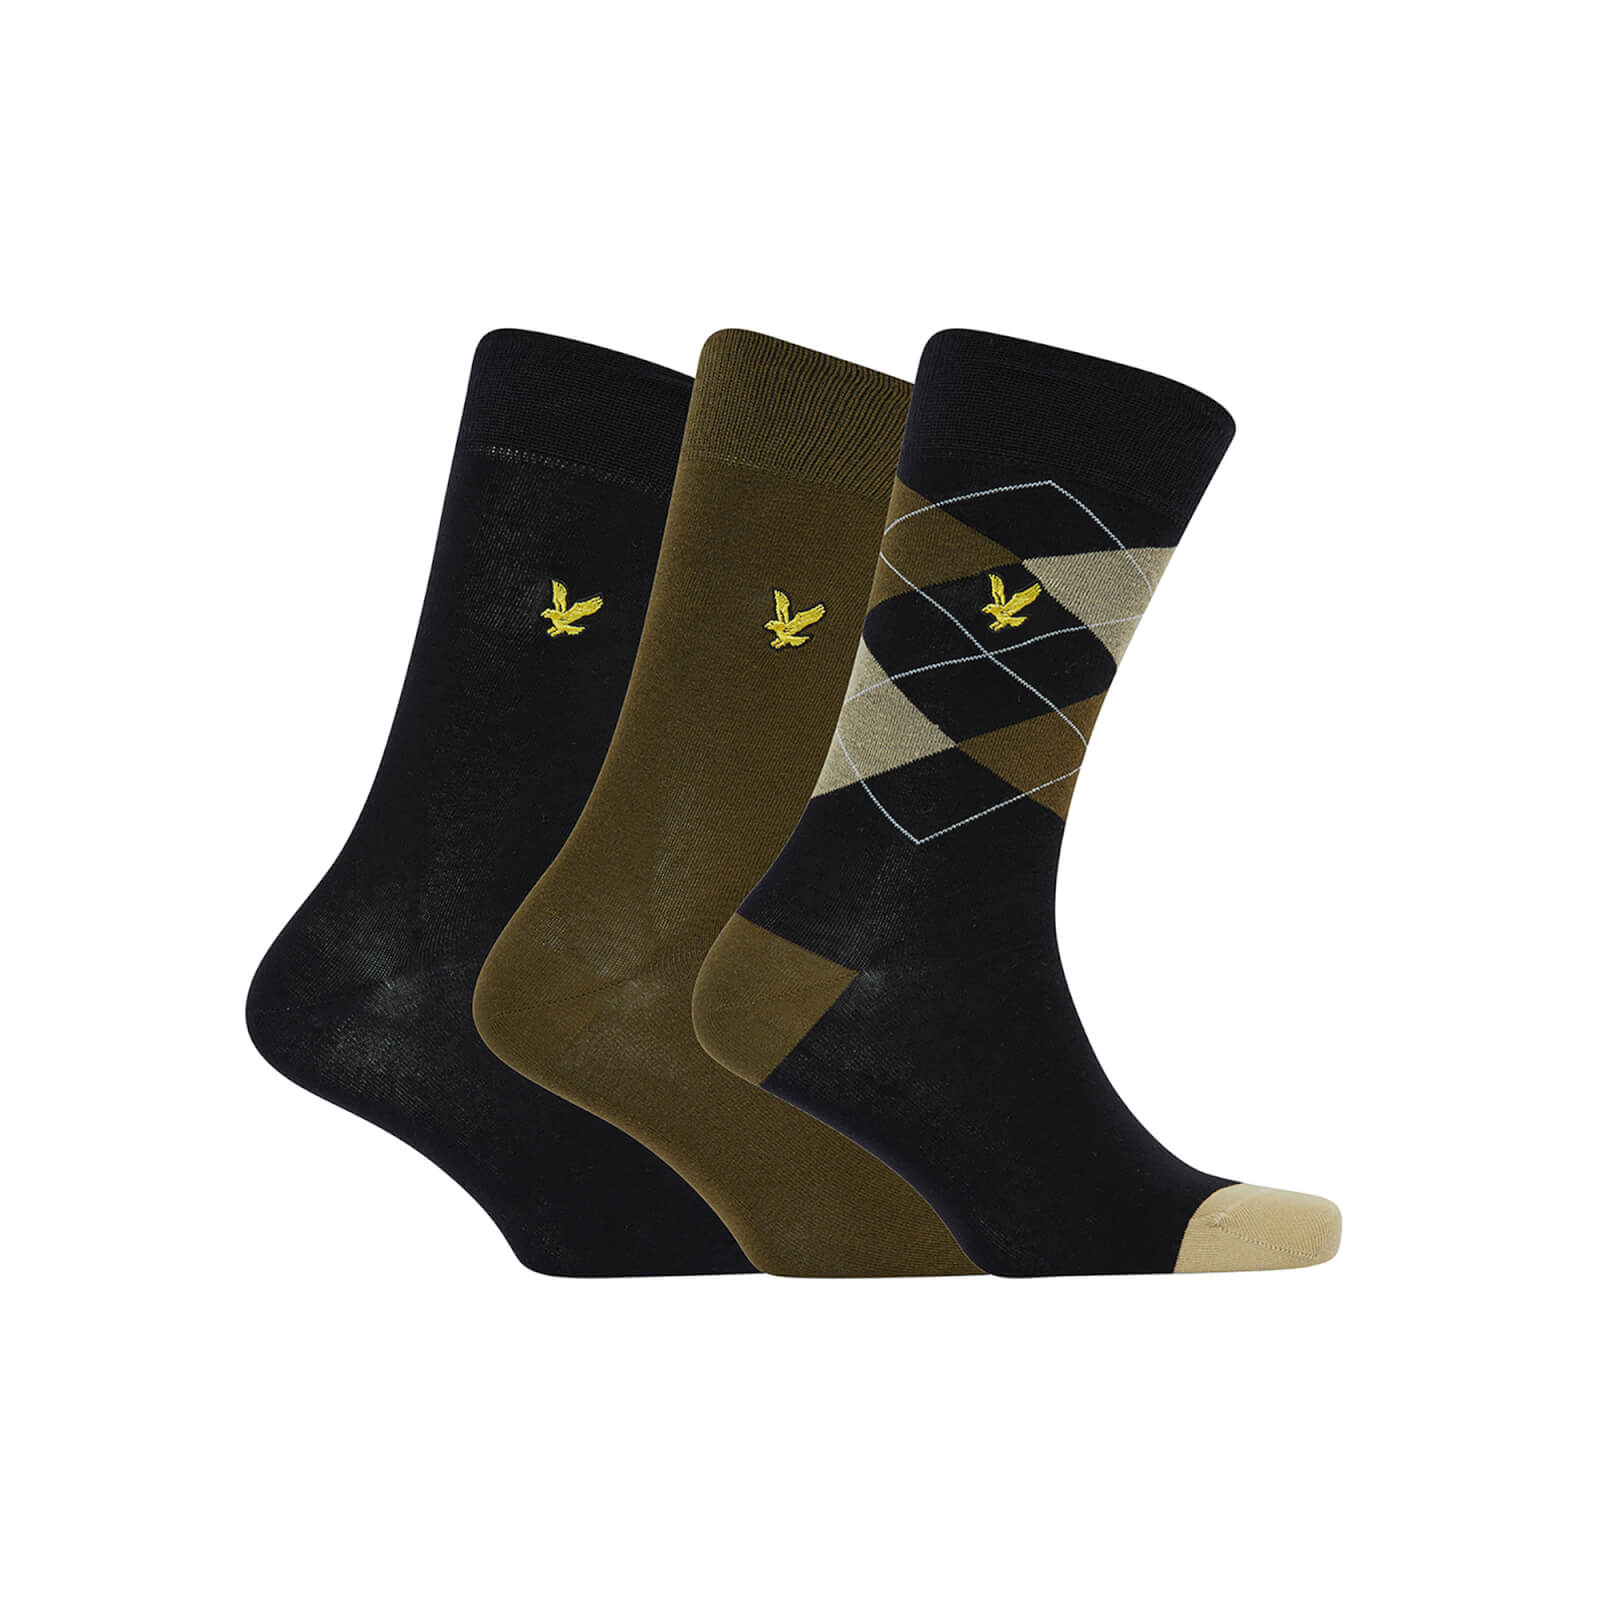 

Lyle & Scott Men's 2 Pack Fashion Socks - Hewie - Argyle/Dark Olive/Black - One Size